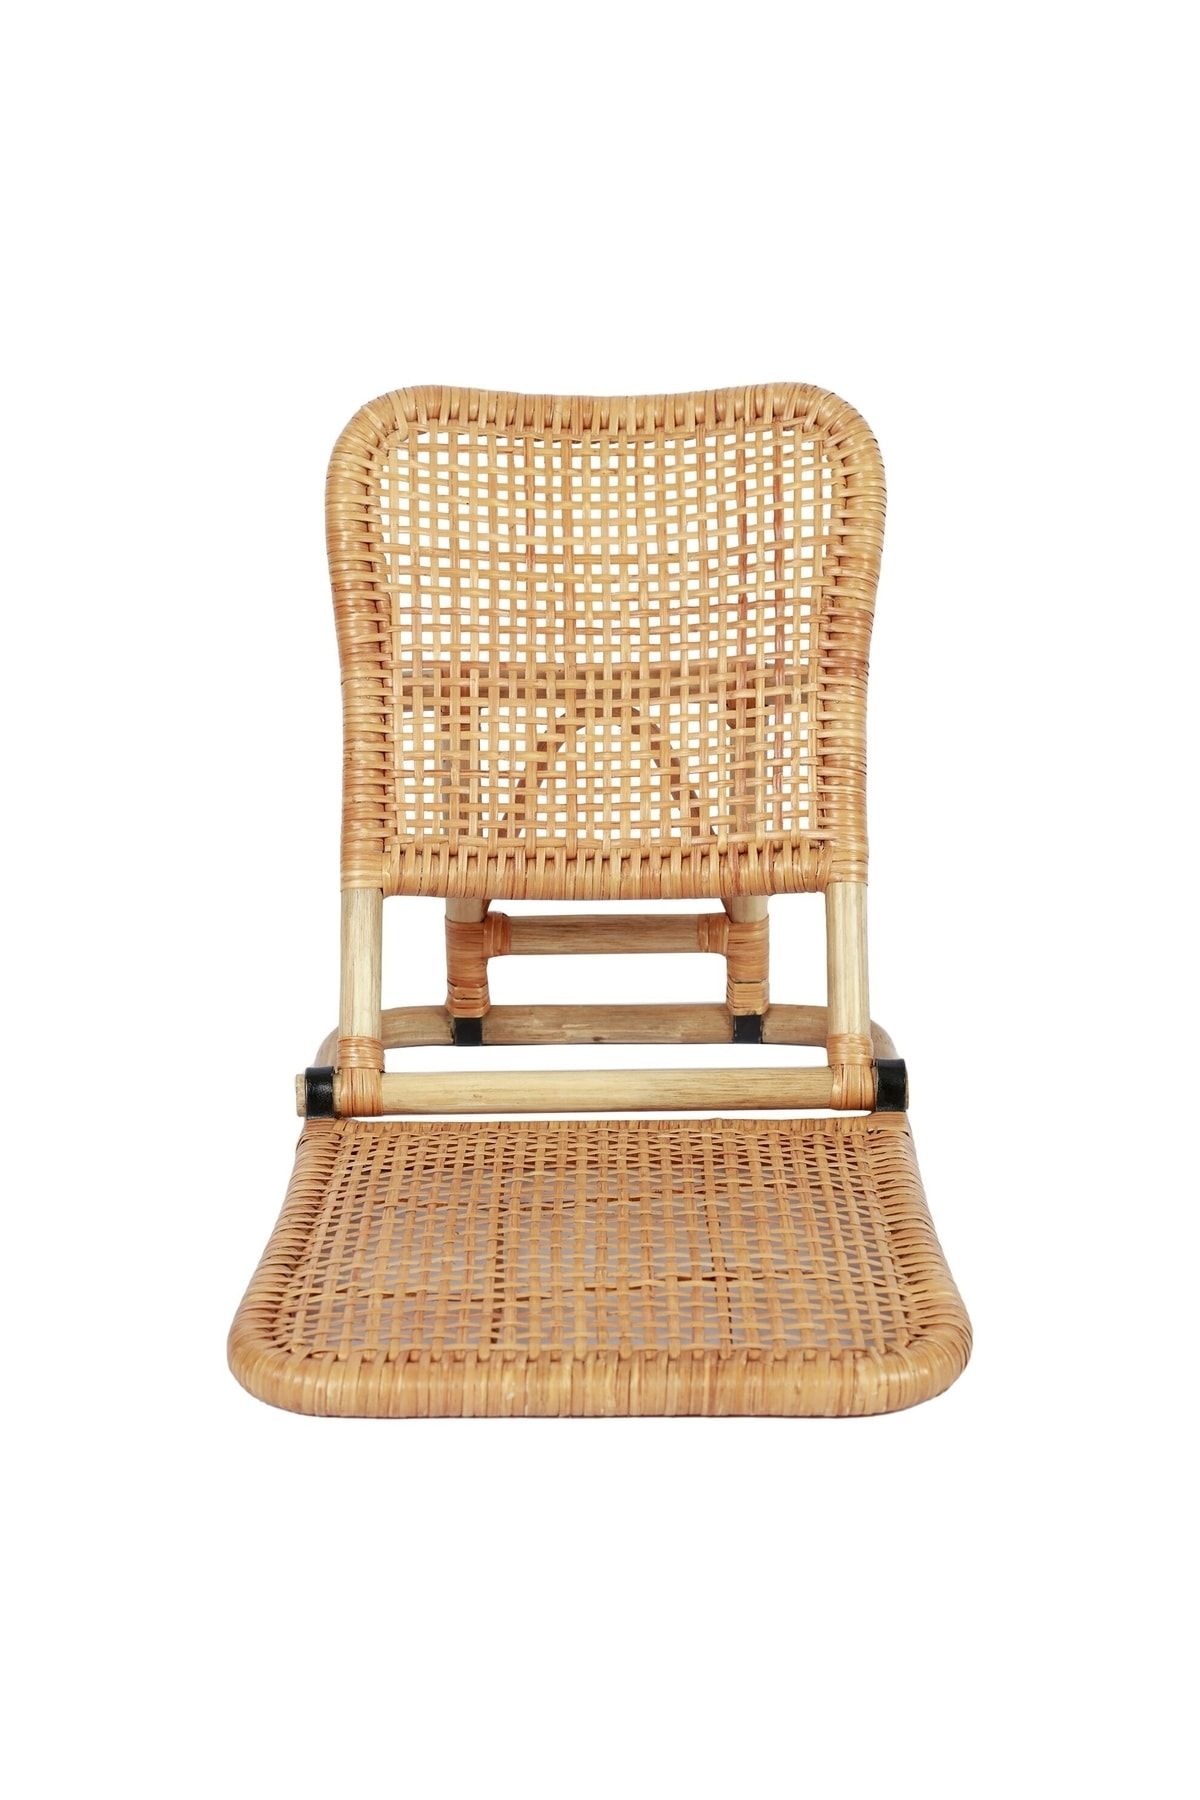 Yargıcı Sandalye (49x63x53cm)